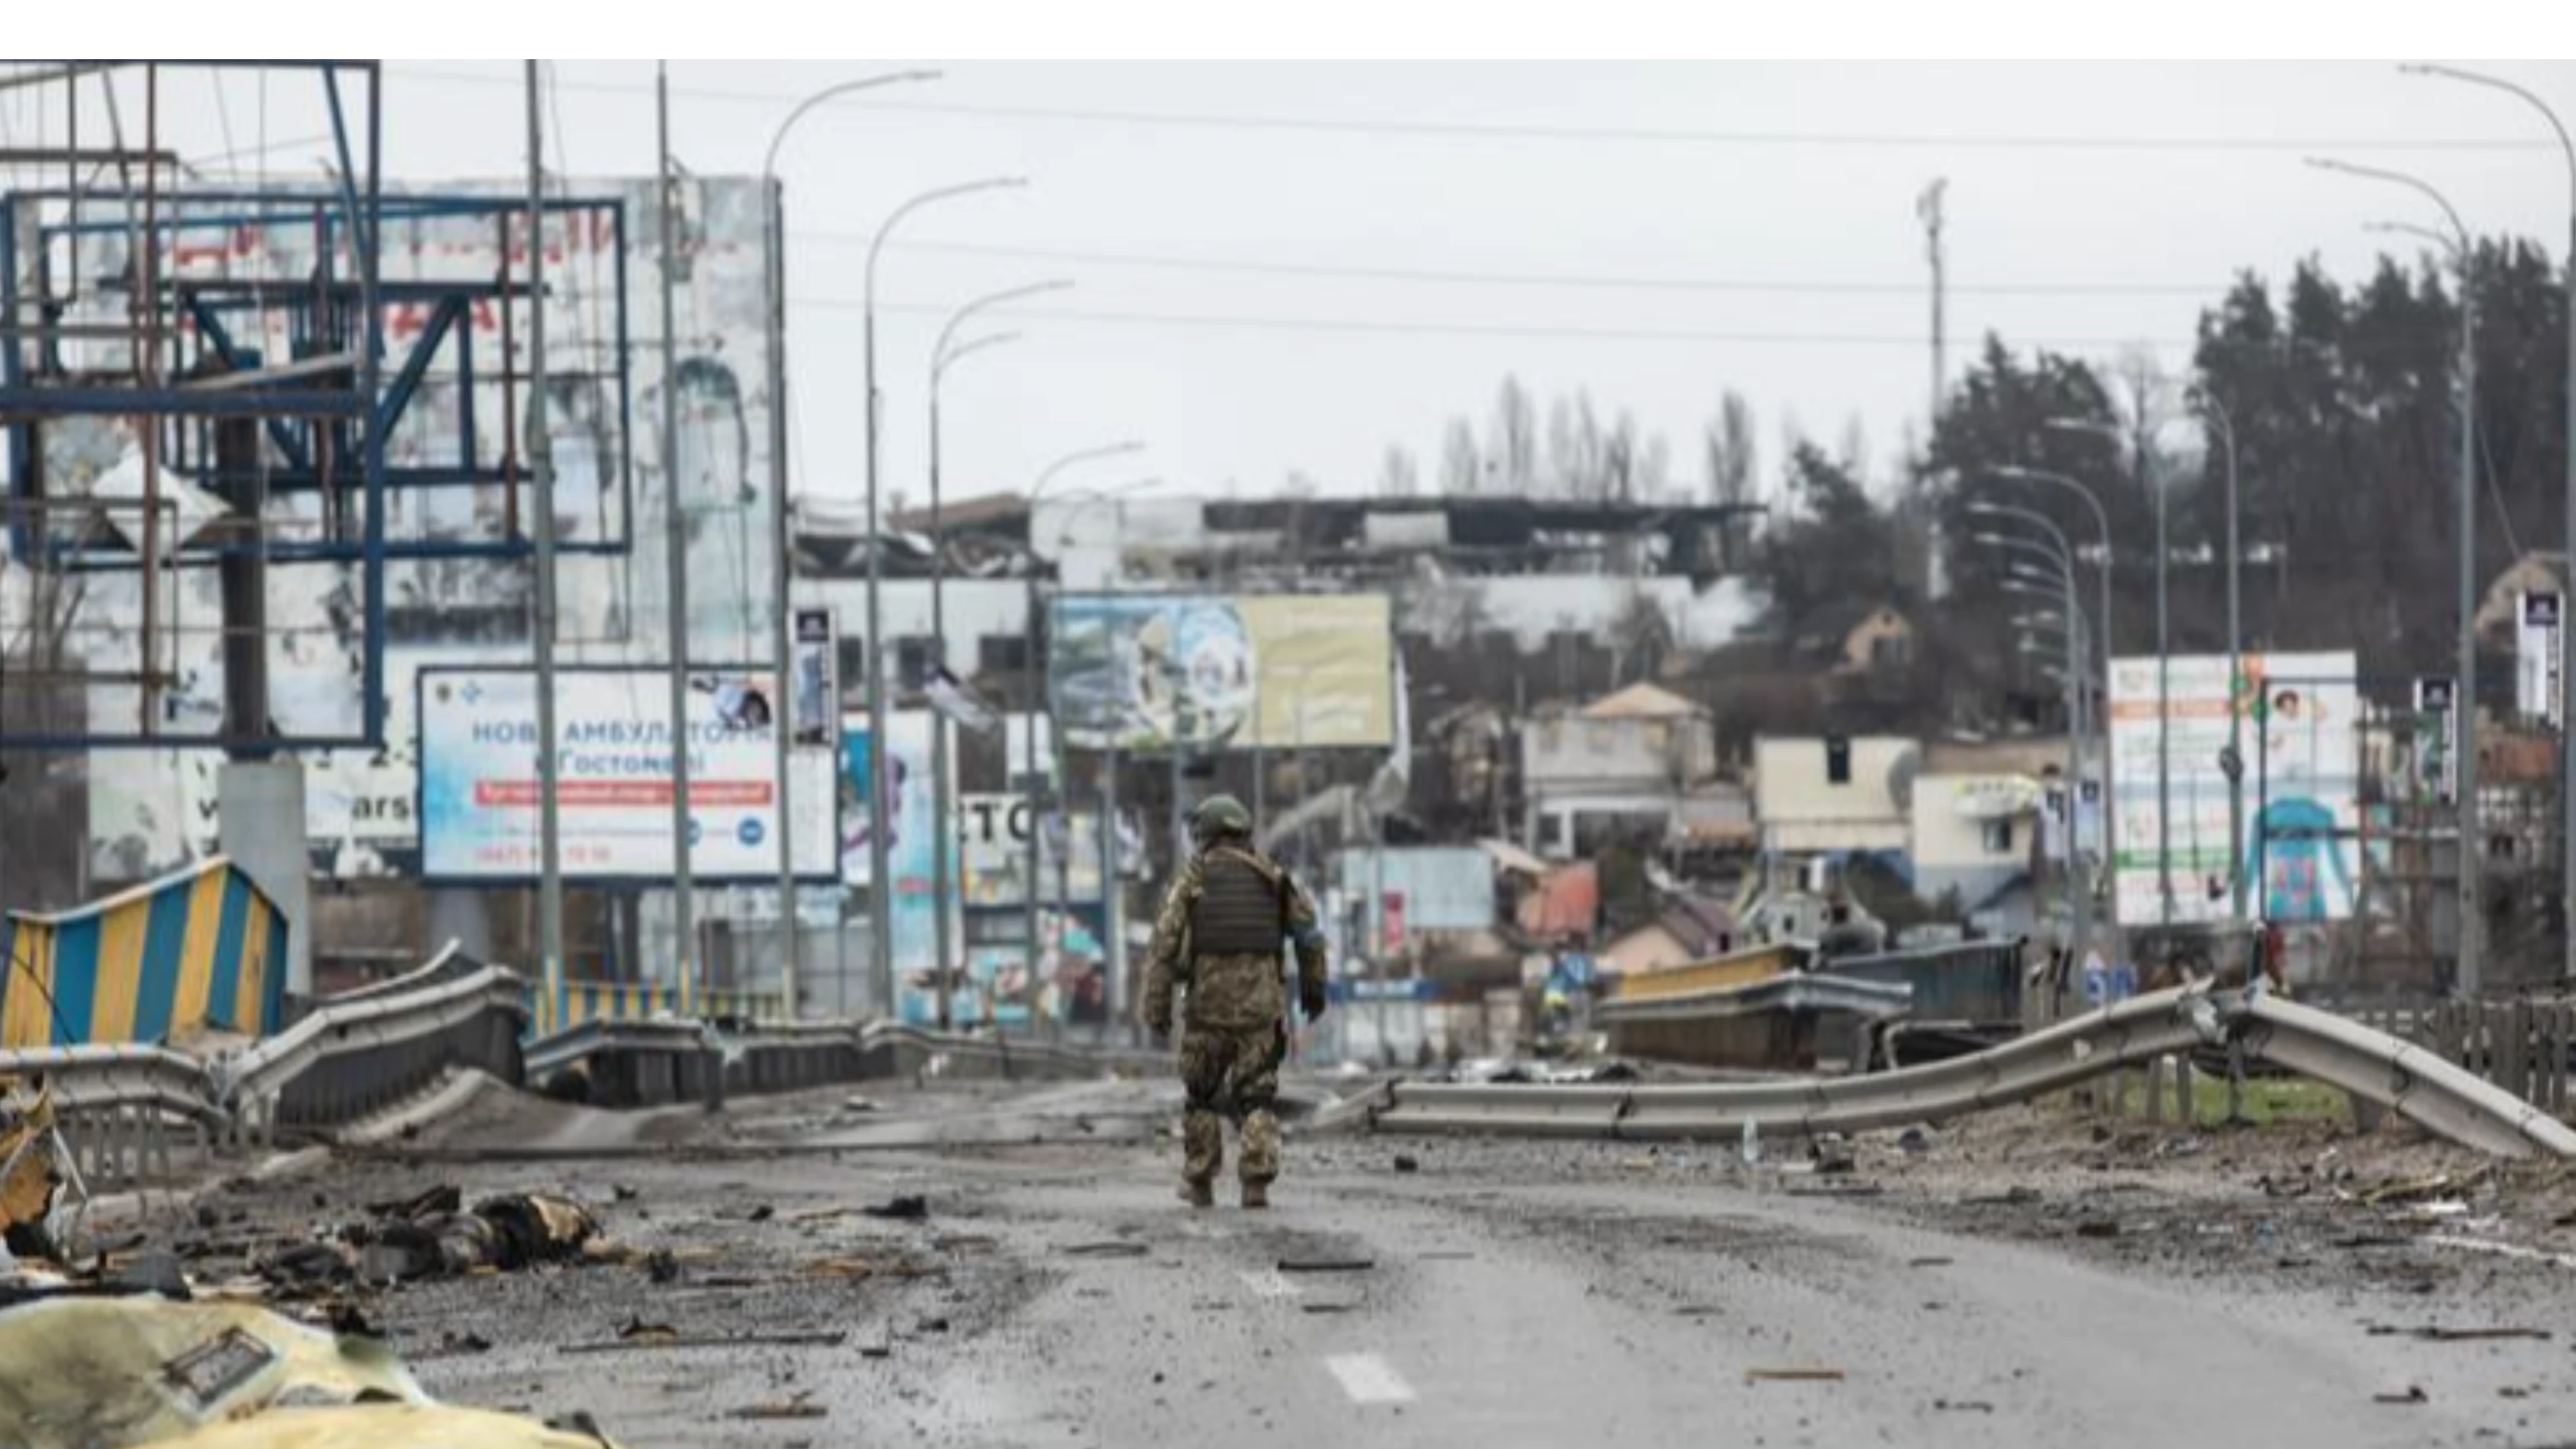 مجازر الروس في بوتشا الأوكرانية تستحضر ما جرى بالبوسنة وتدفع مجلس الأمن للانعقاد